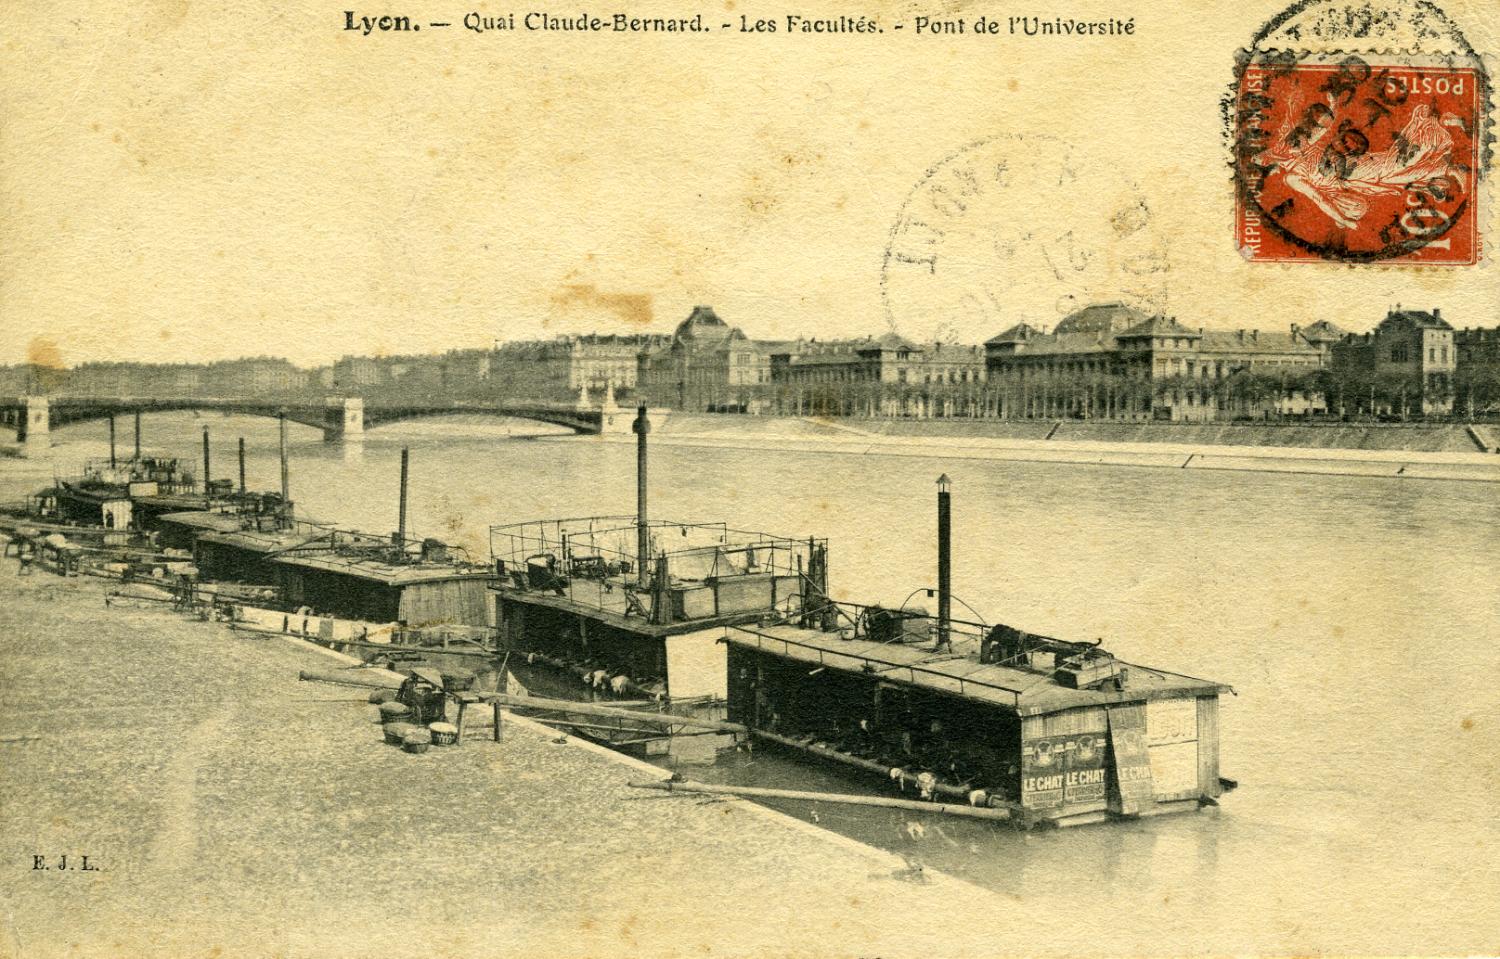 Lyon - Quai Claude Bernard. - Les Facultés. - Pont de l'Université